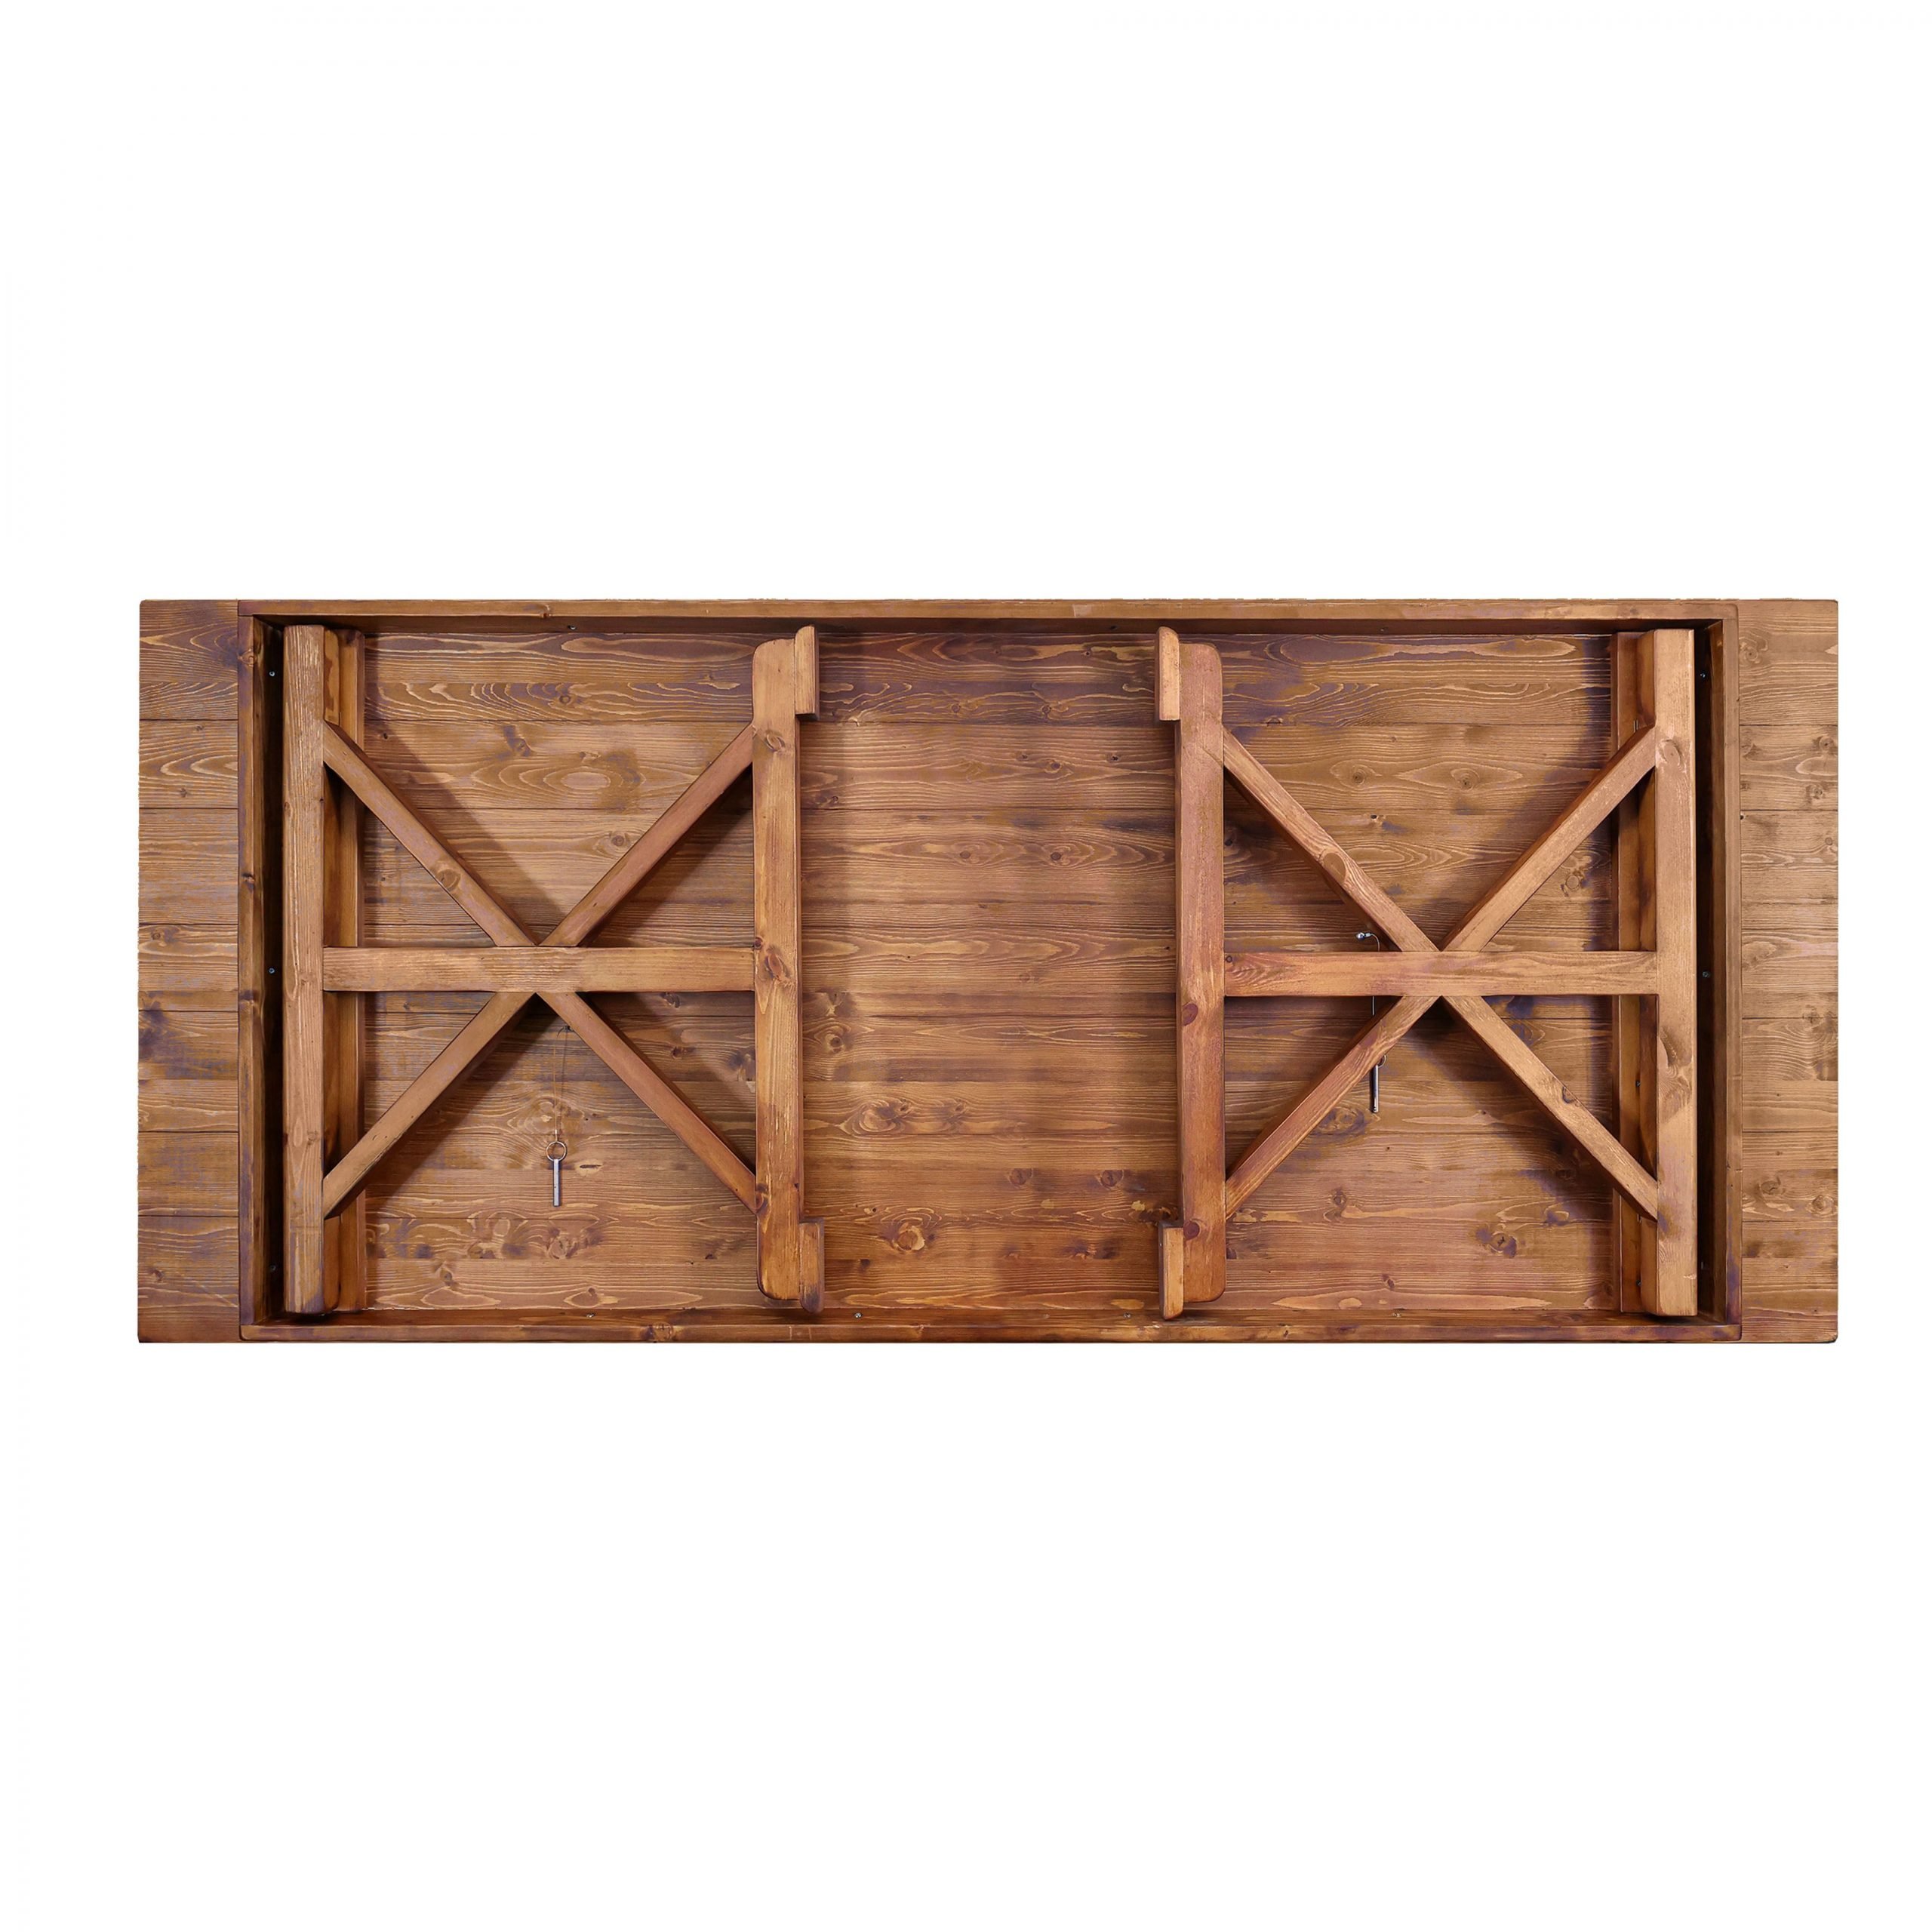 crossleg wood table b